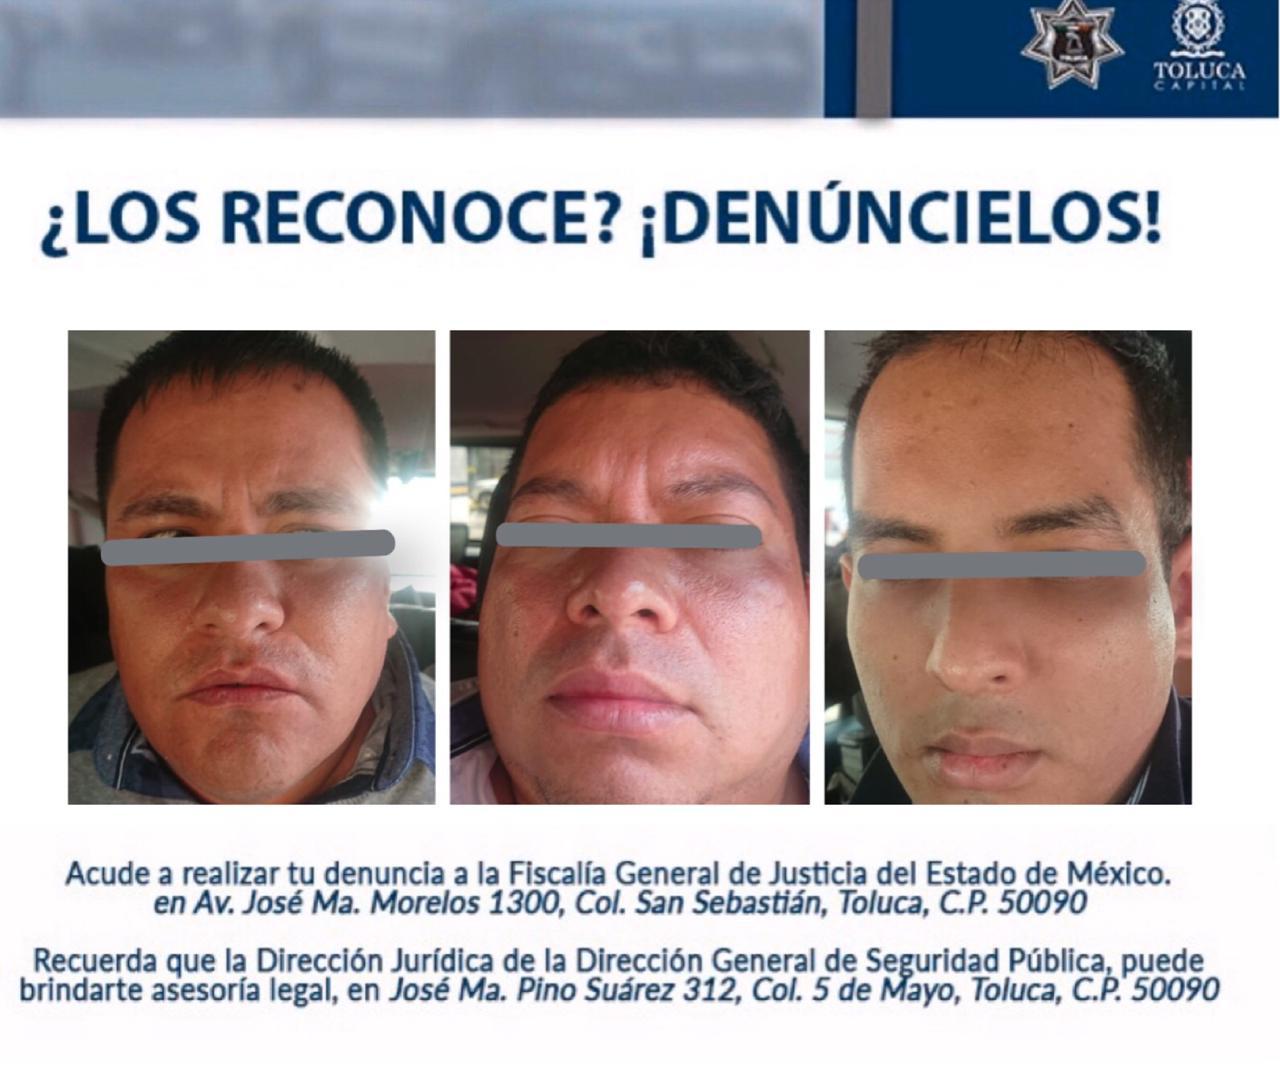 Policía Municipal detiene a banda dedicada a engañar en cajeros automáticos, eran peruanos